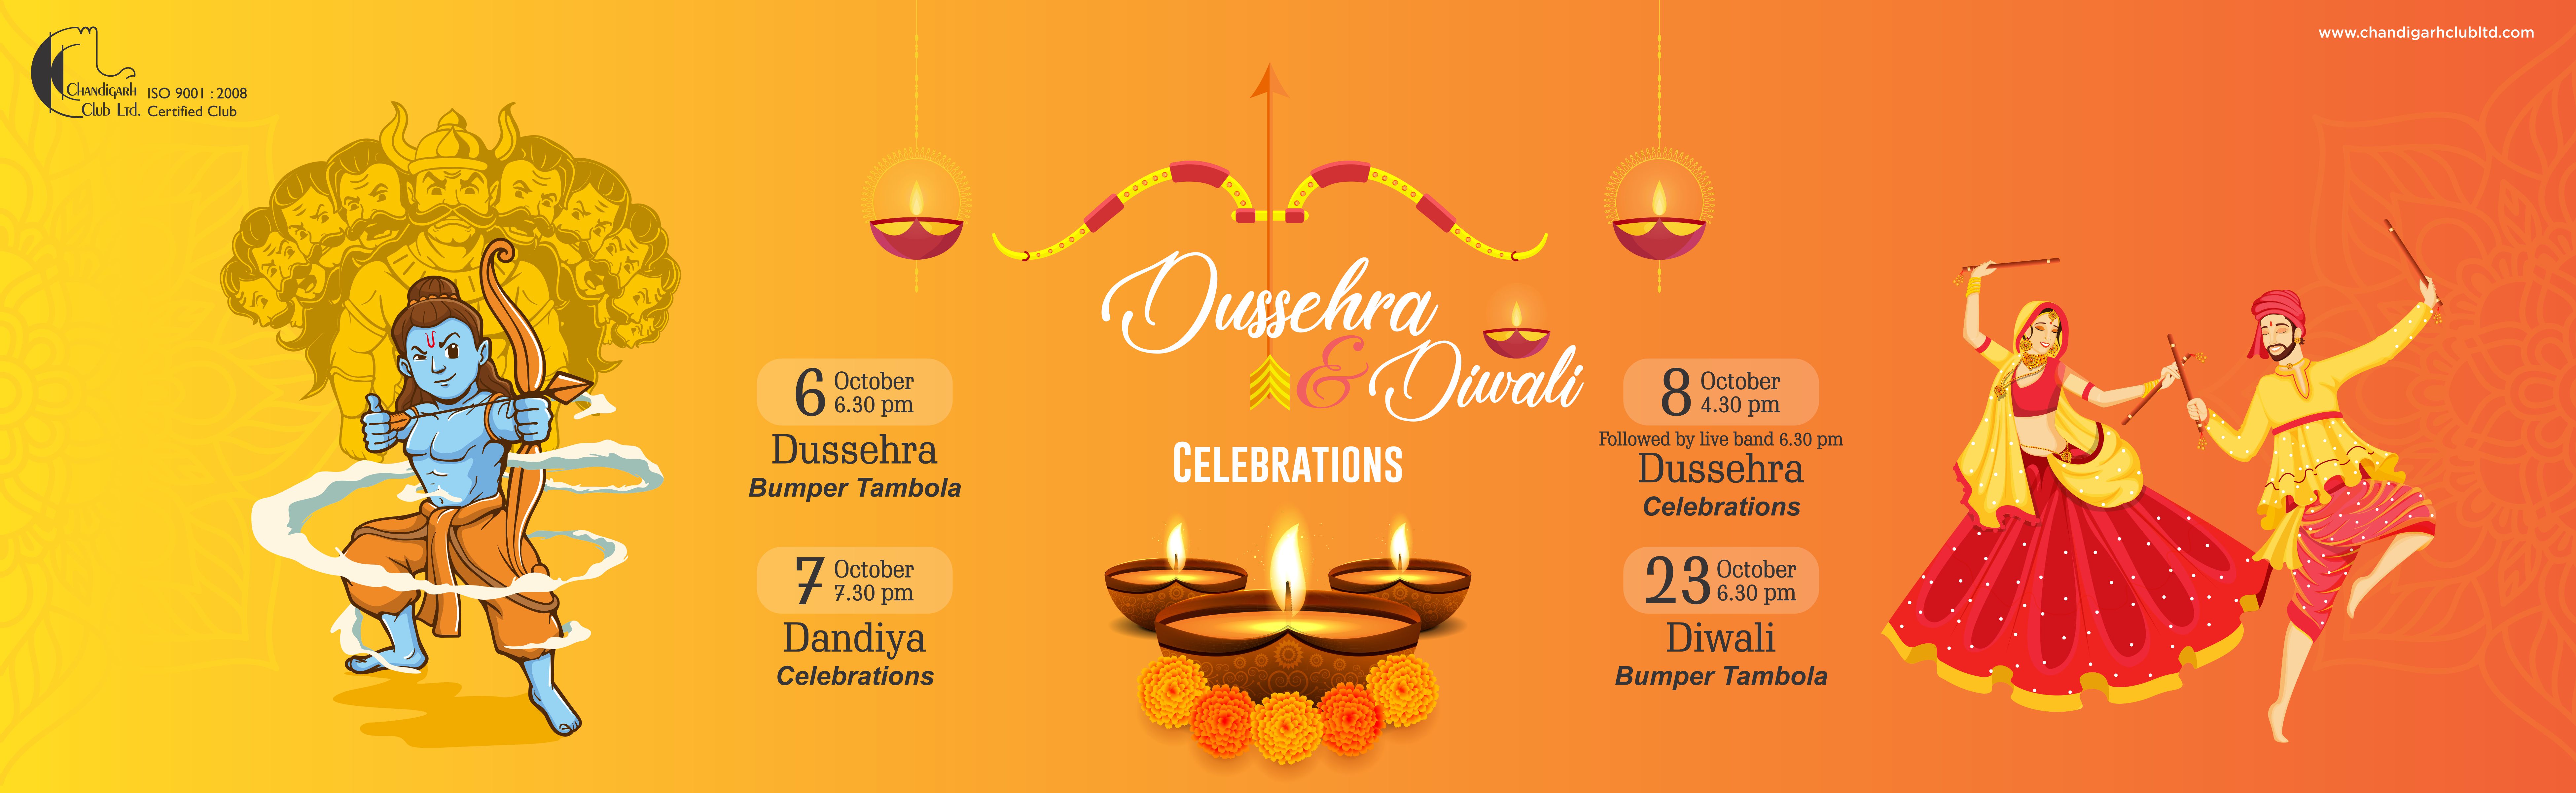  Dussehra & Diwali Celebrations